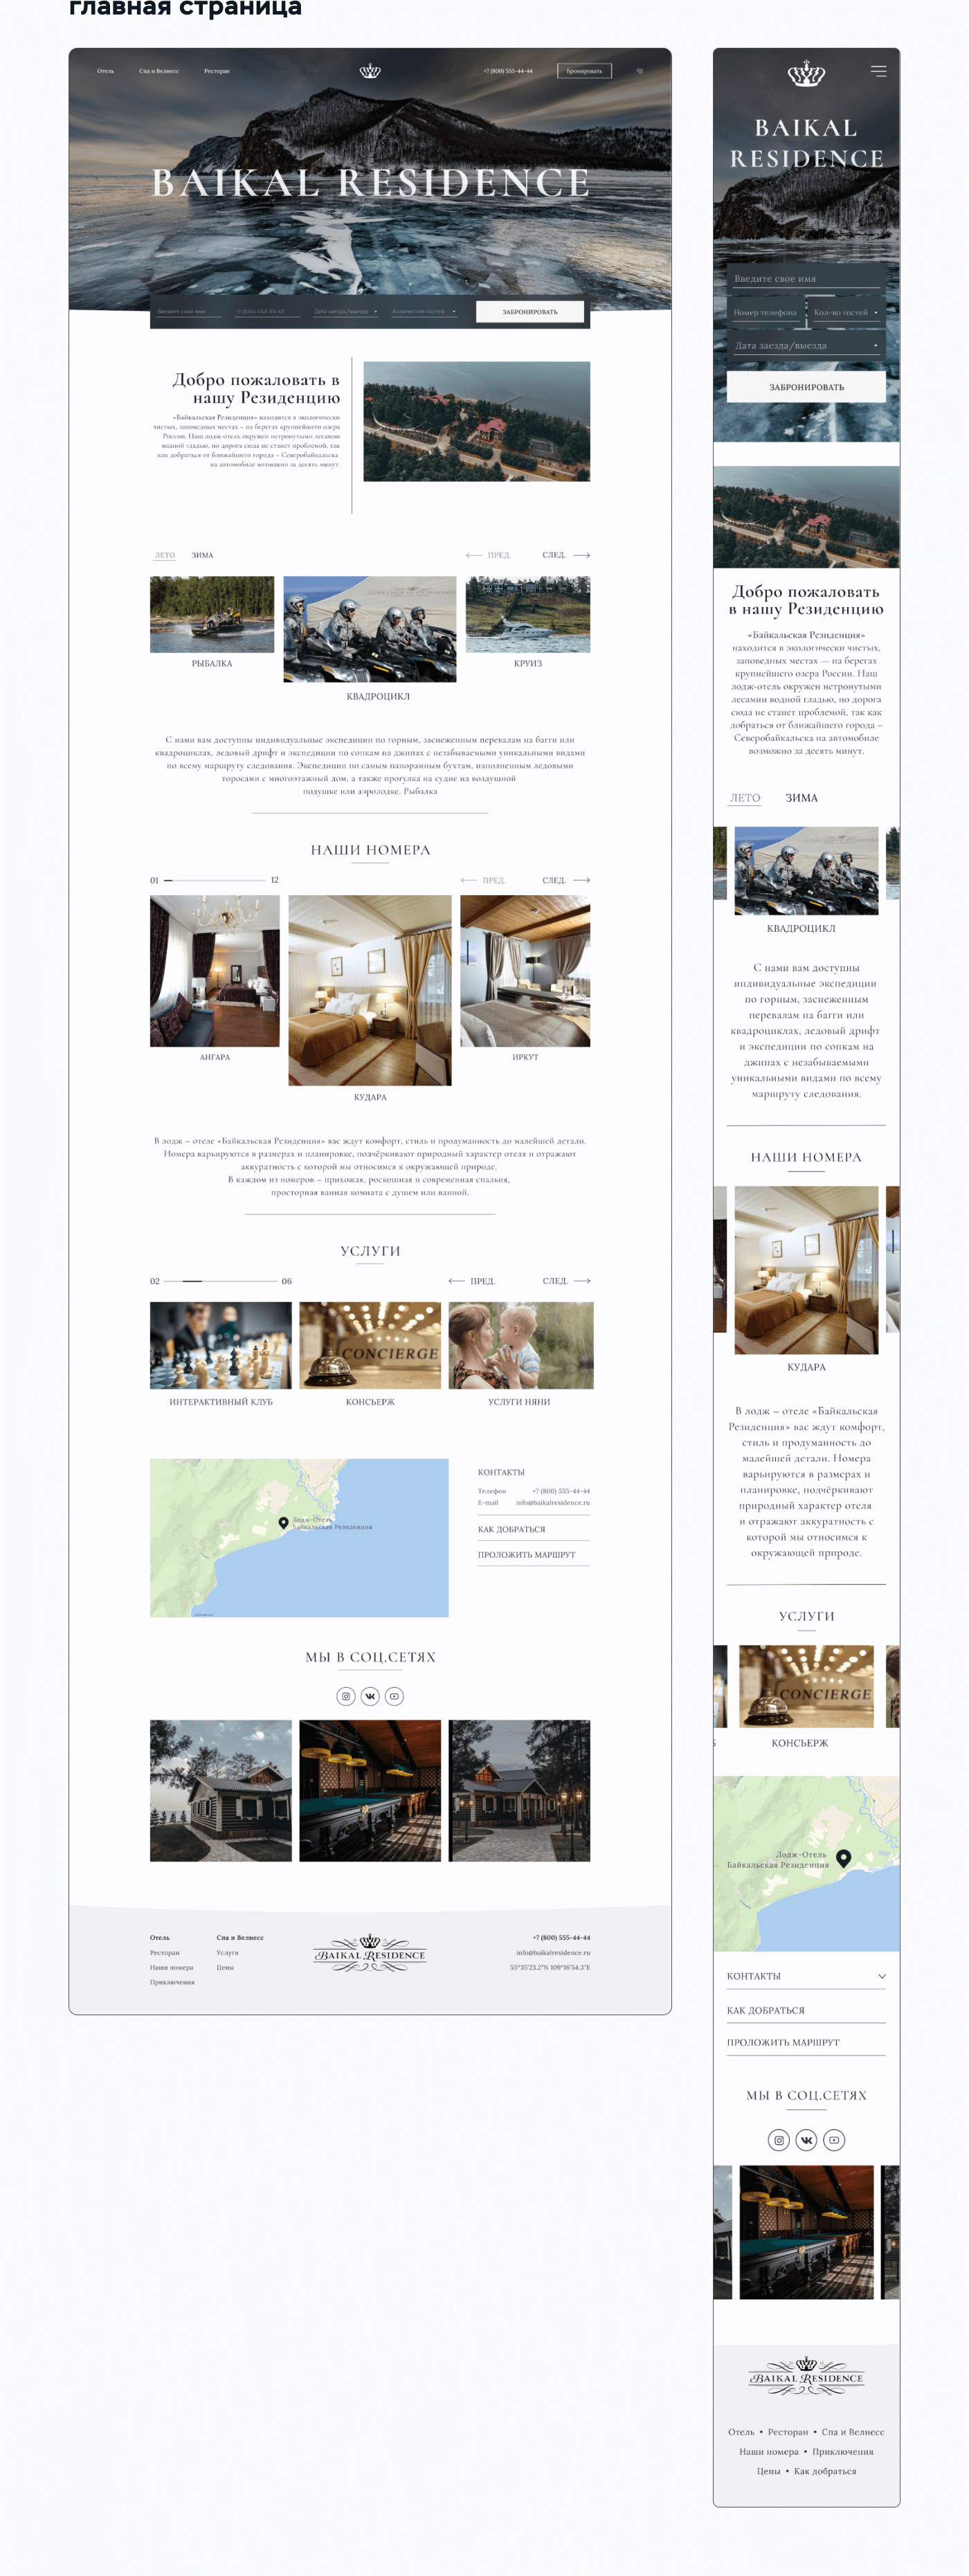 Байкальская резиденция | Редизайн сайта отеля — Изображение №4 — Интерфейсы, Анимация на Dprofile